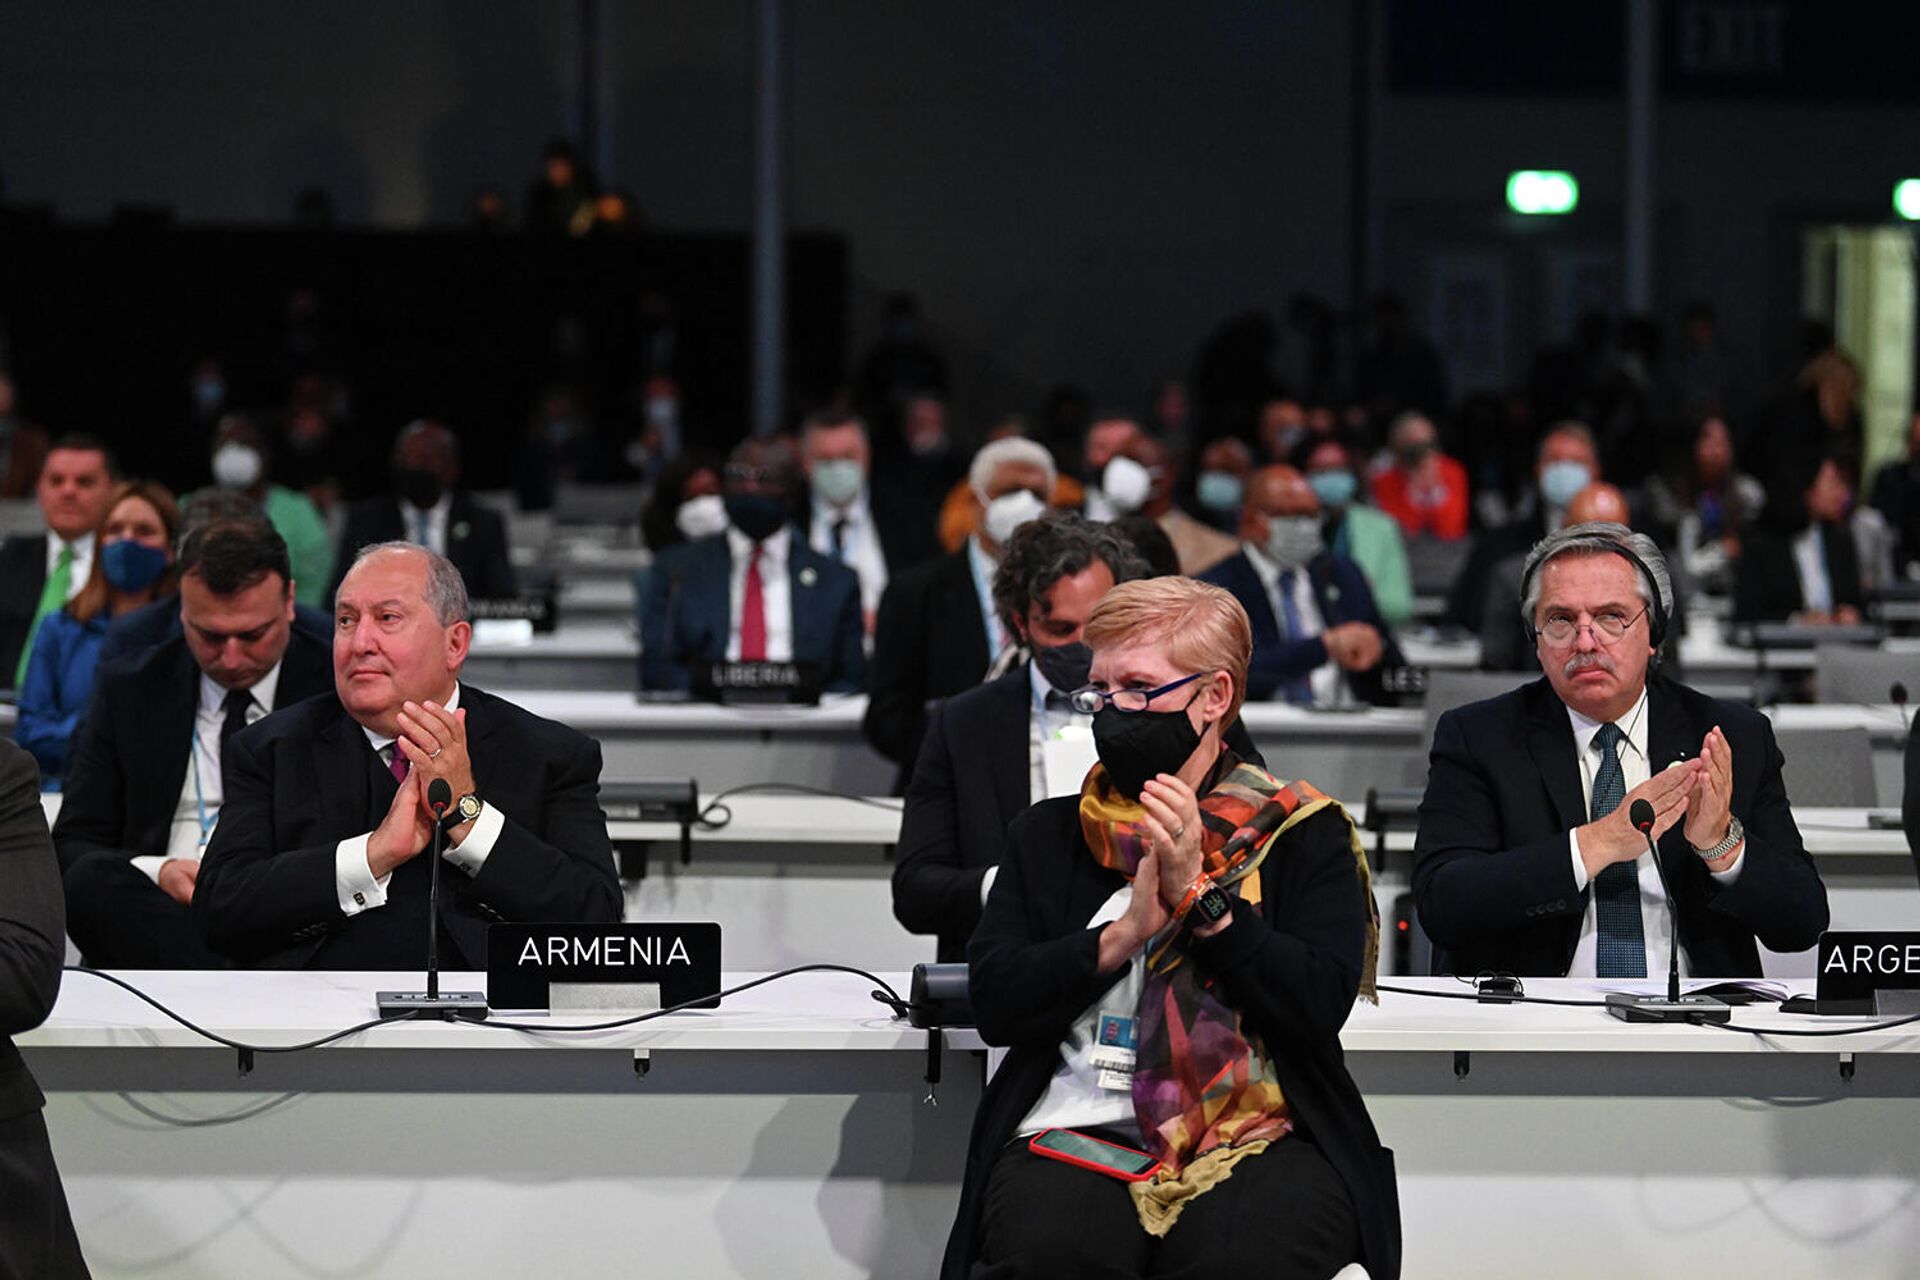 Նախագահ Արմեն Սարգսյանը մասնակցում է ՄԱԿ-ի՝ Կլիմայի փոփոխության մասին շրջանակային կոնվենցիայի կողմերի 26-րդ համաժողովին (1 նոյեմբերի 2021): Գլազգո - Sputnik Արմենիա, 1920, 01.11.2021